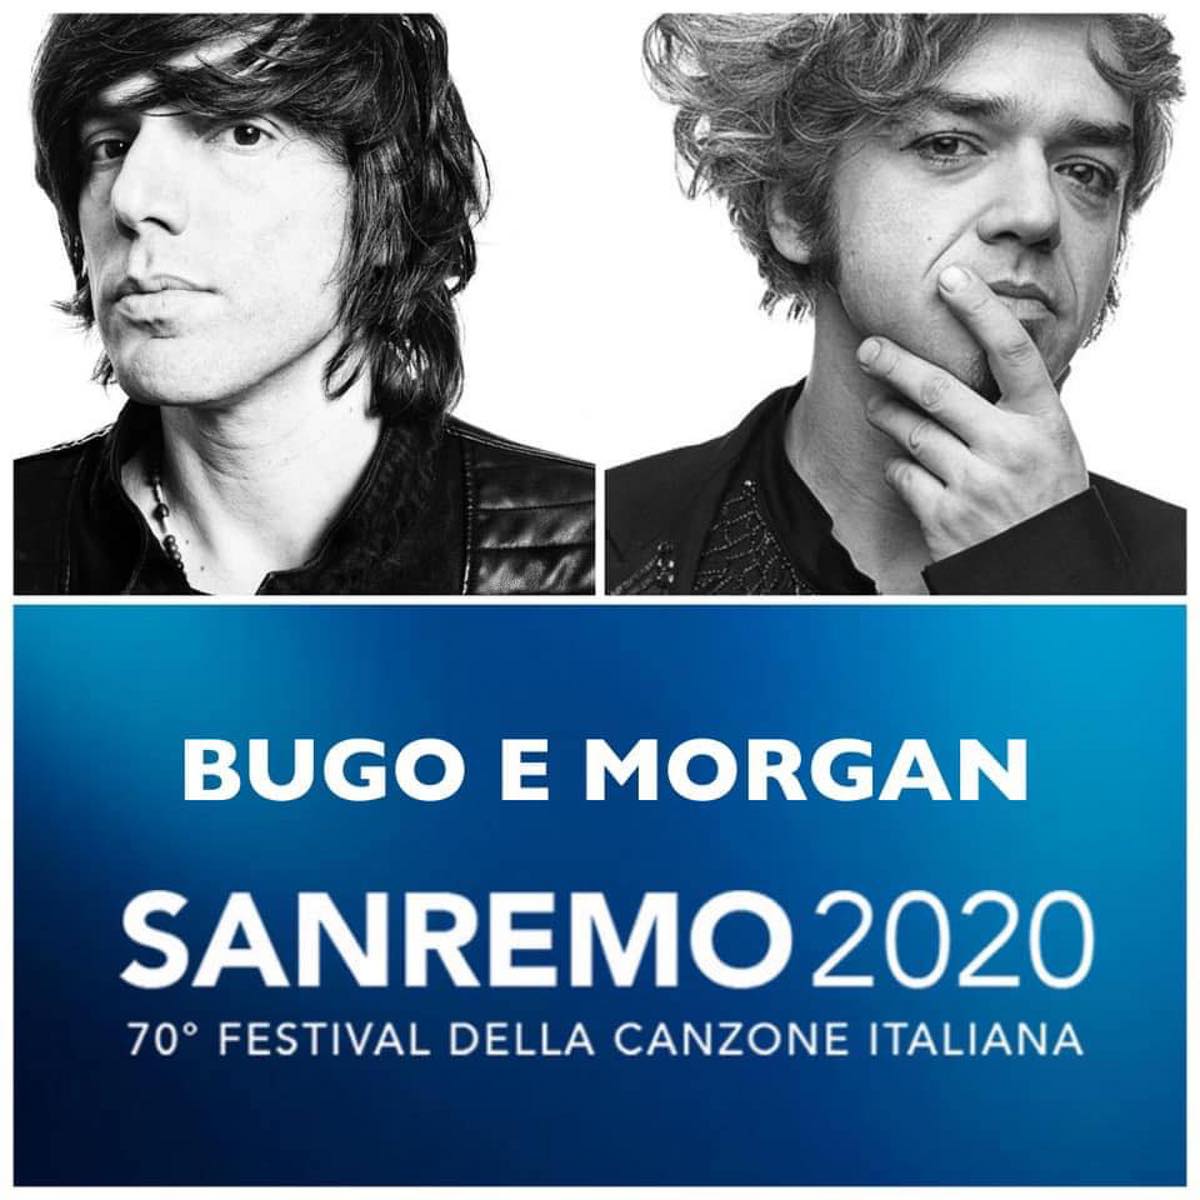 Sincero - Bugo e Morgan testo canzone sanremo 2020